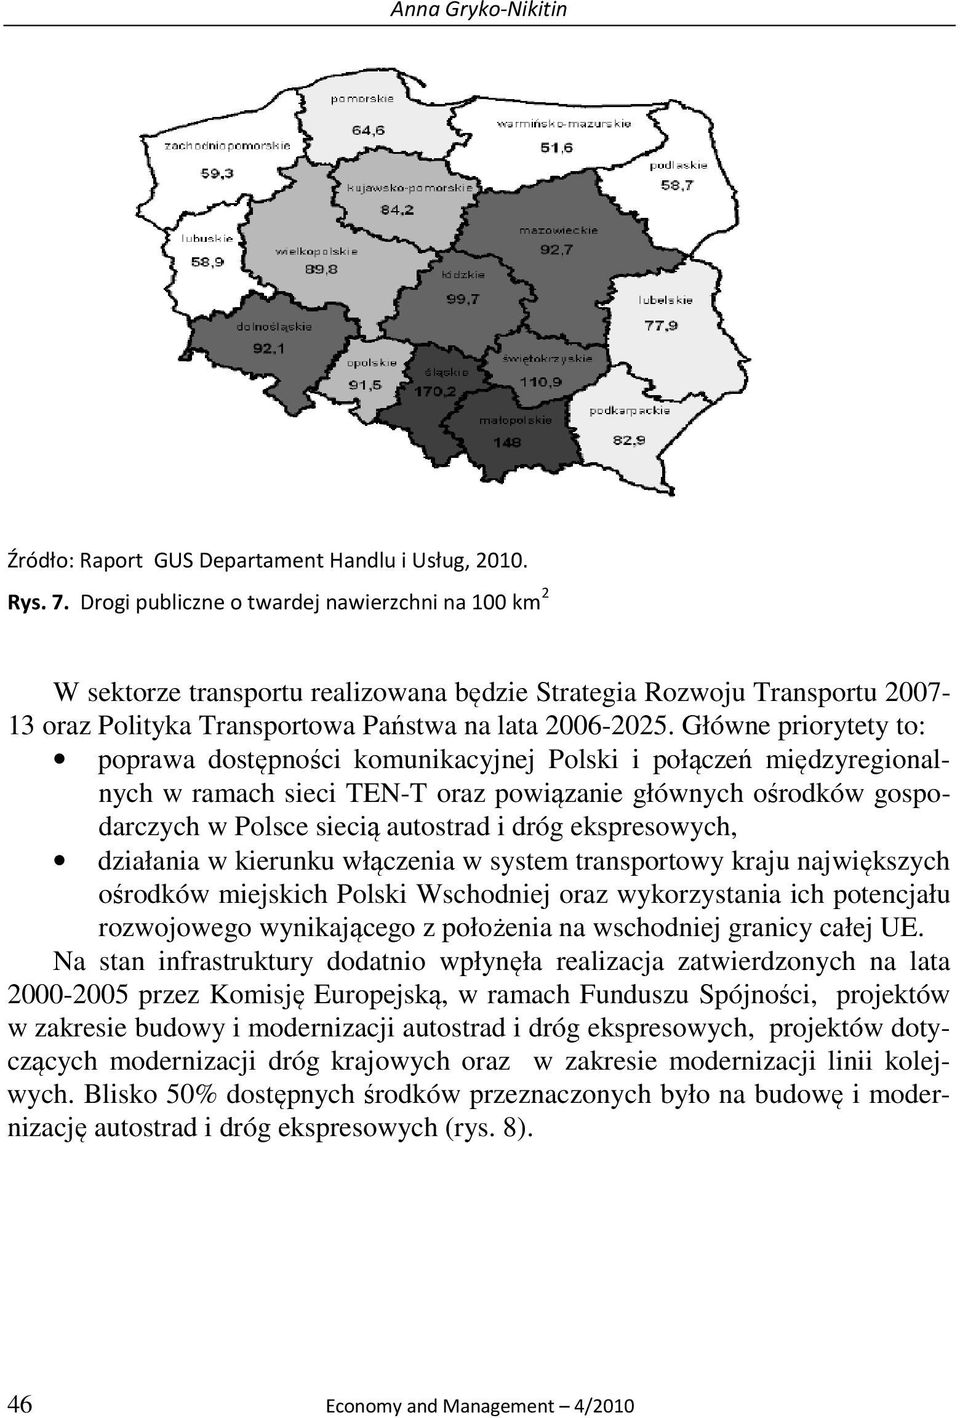 Główne priorytety to: poprawa dostępności komunikacyjnej Polski i połączeń międzyregionalnych w ramach sieci TEN-T oraz powiązanie głównych ośrodków gospodarczych w Polsce siecią autostrad i dróg